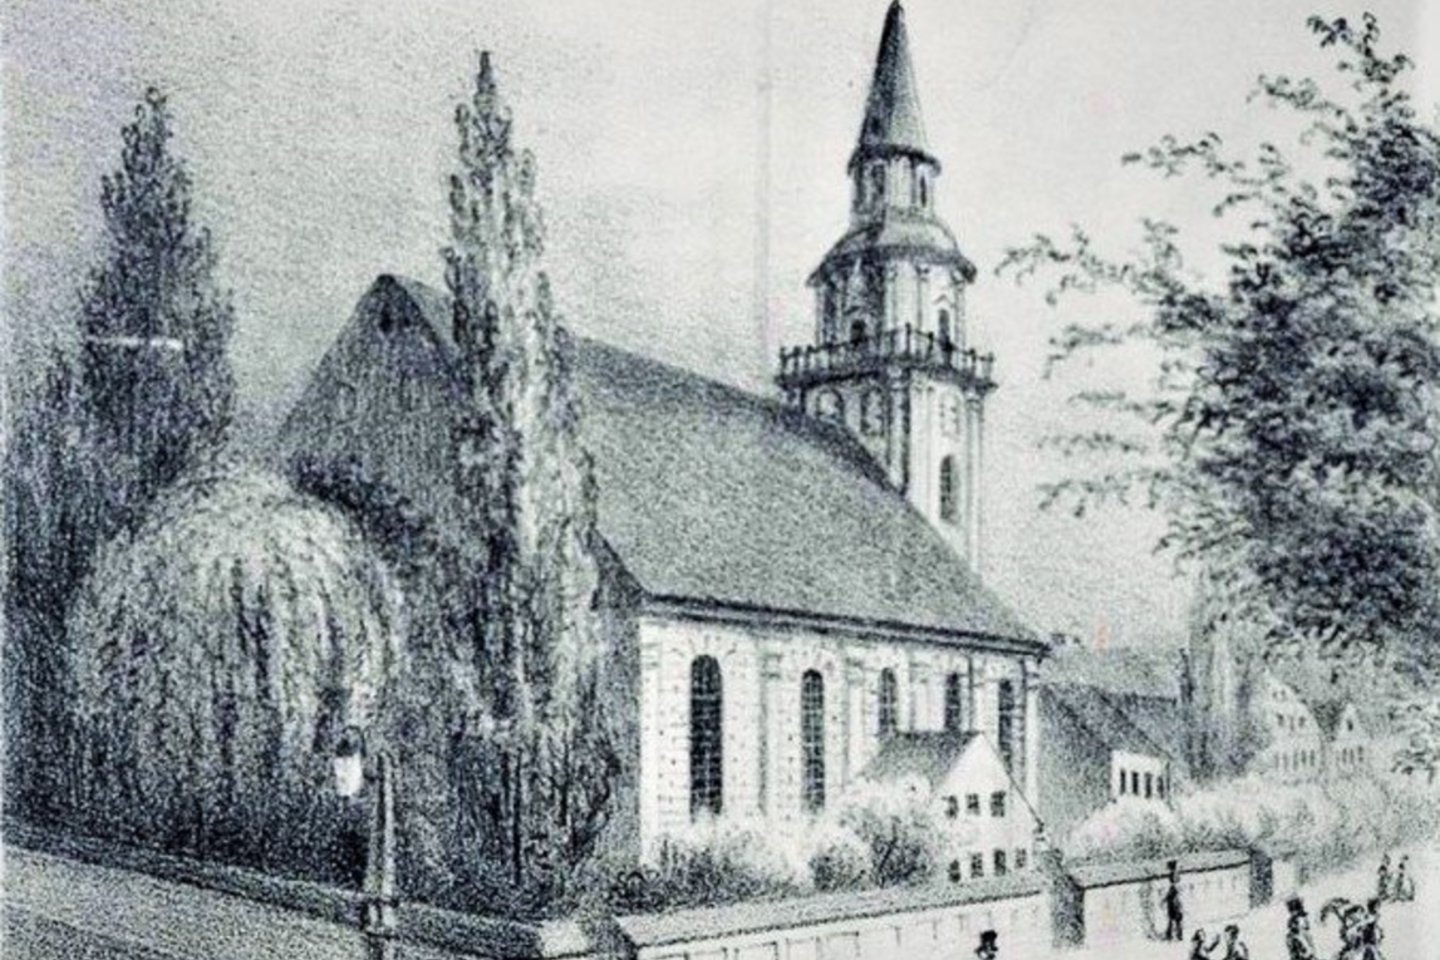 Taip atrodė Turgaus gatvės gale stovėjusi evangelikų bažnyčia prieš miestą nusiaubusį didijį gaisrą. 1852.<br> E.G. Waldhauerio piešinys.